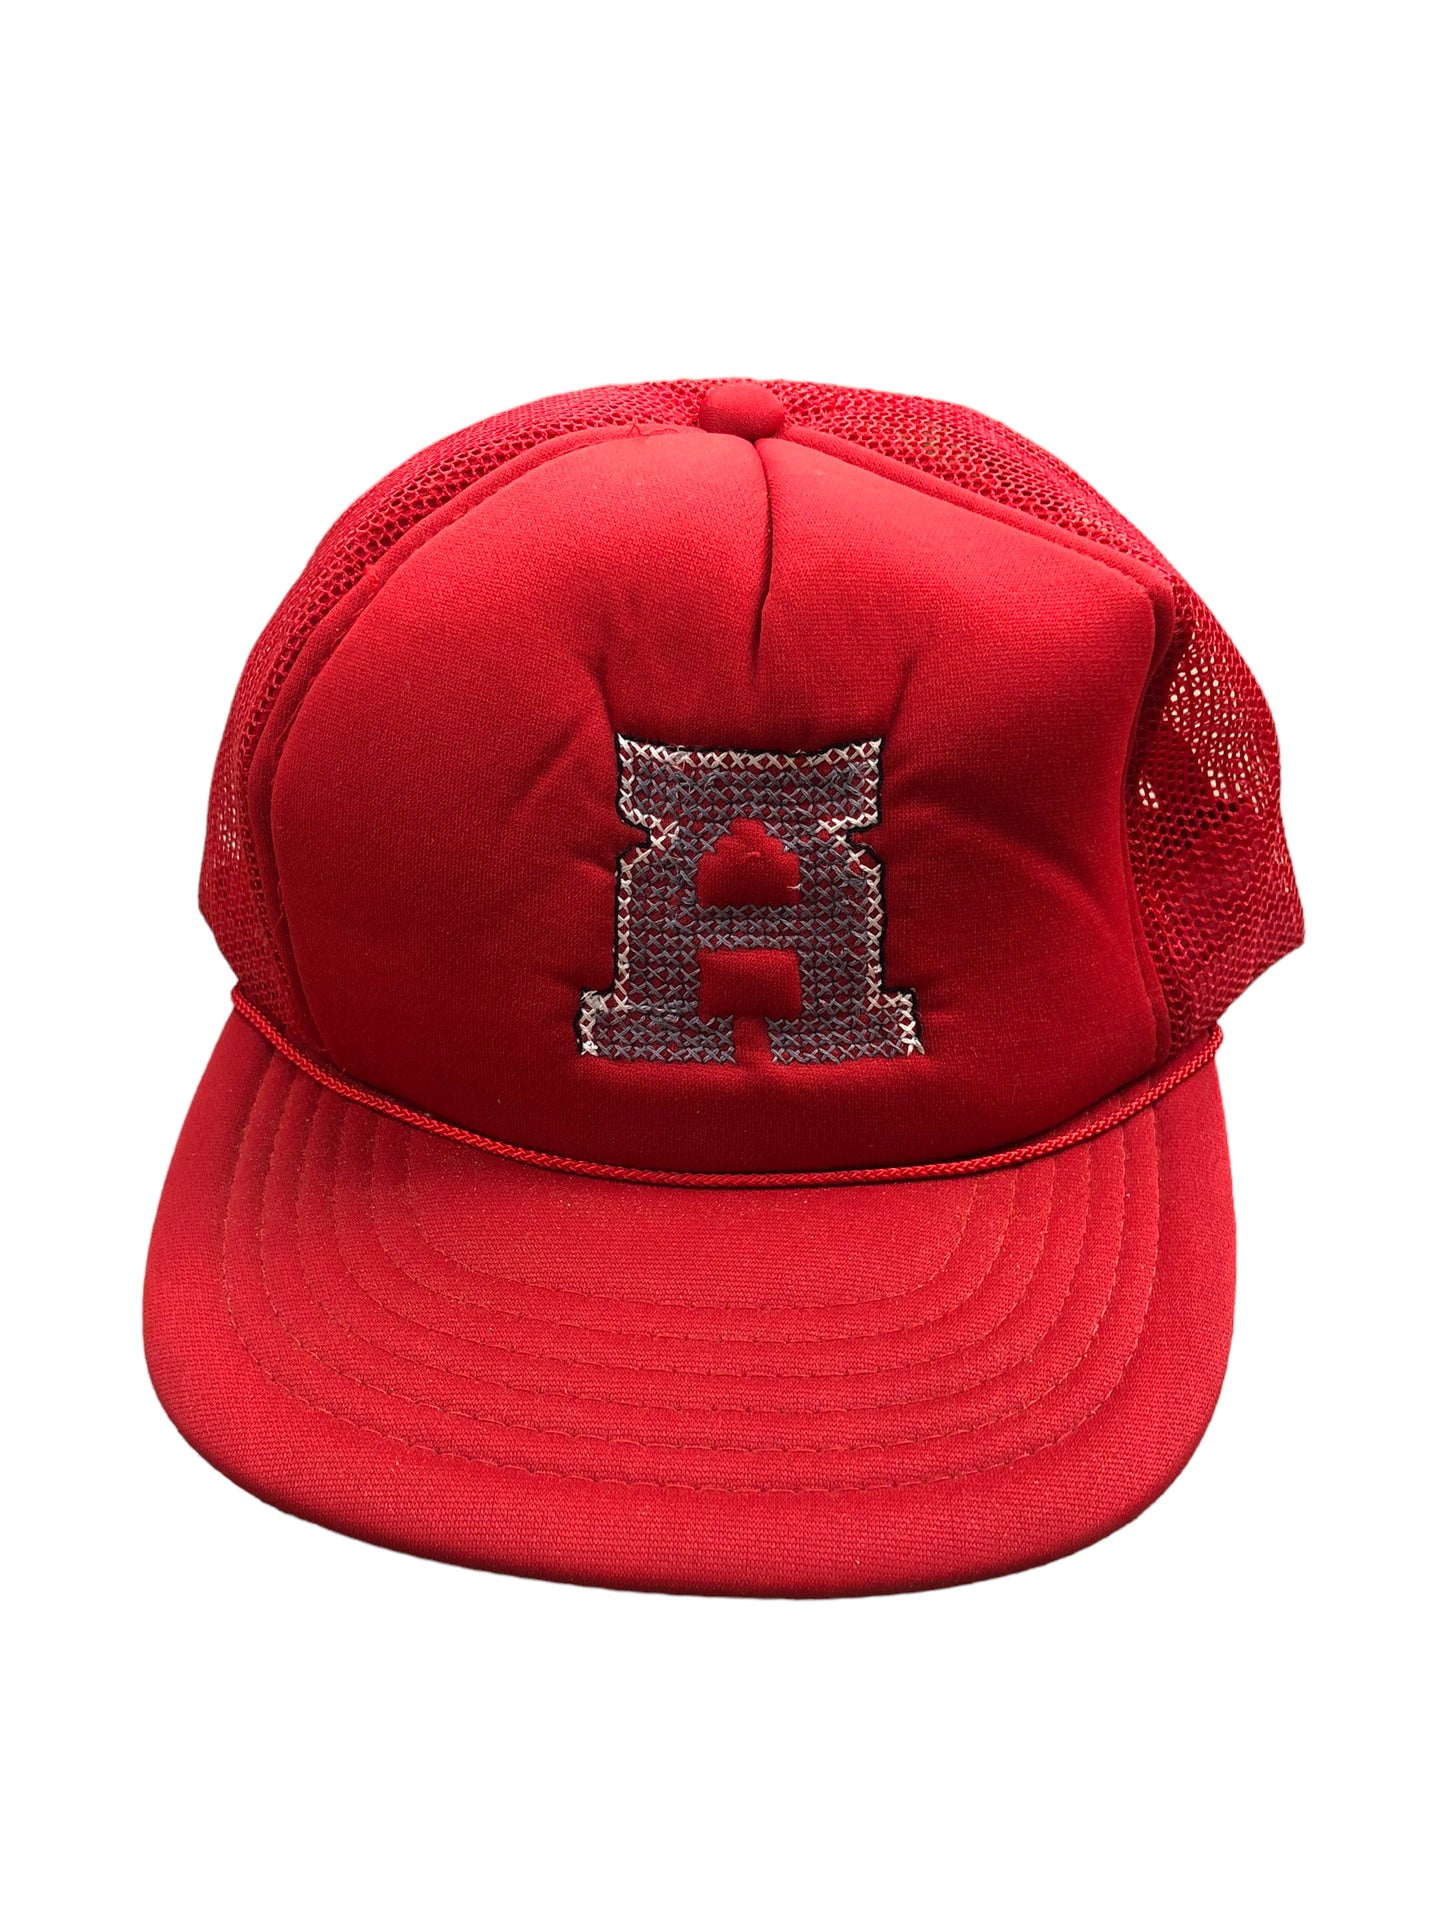 VTG Red Chain Stitch Alabama Trucker Hat